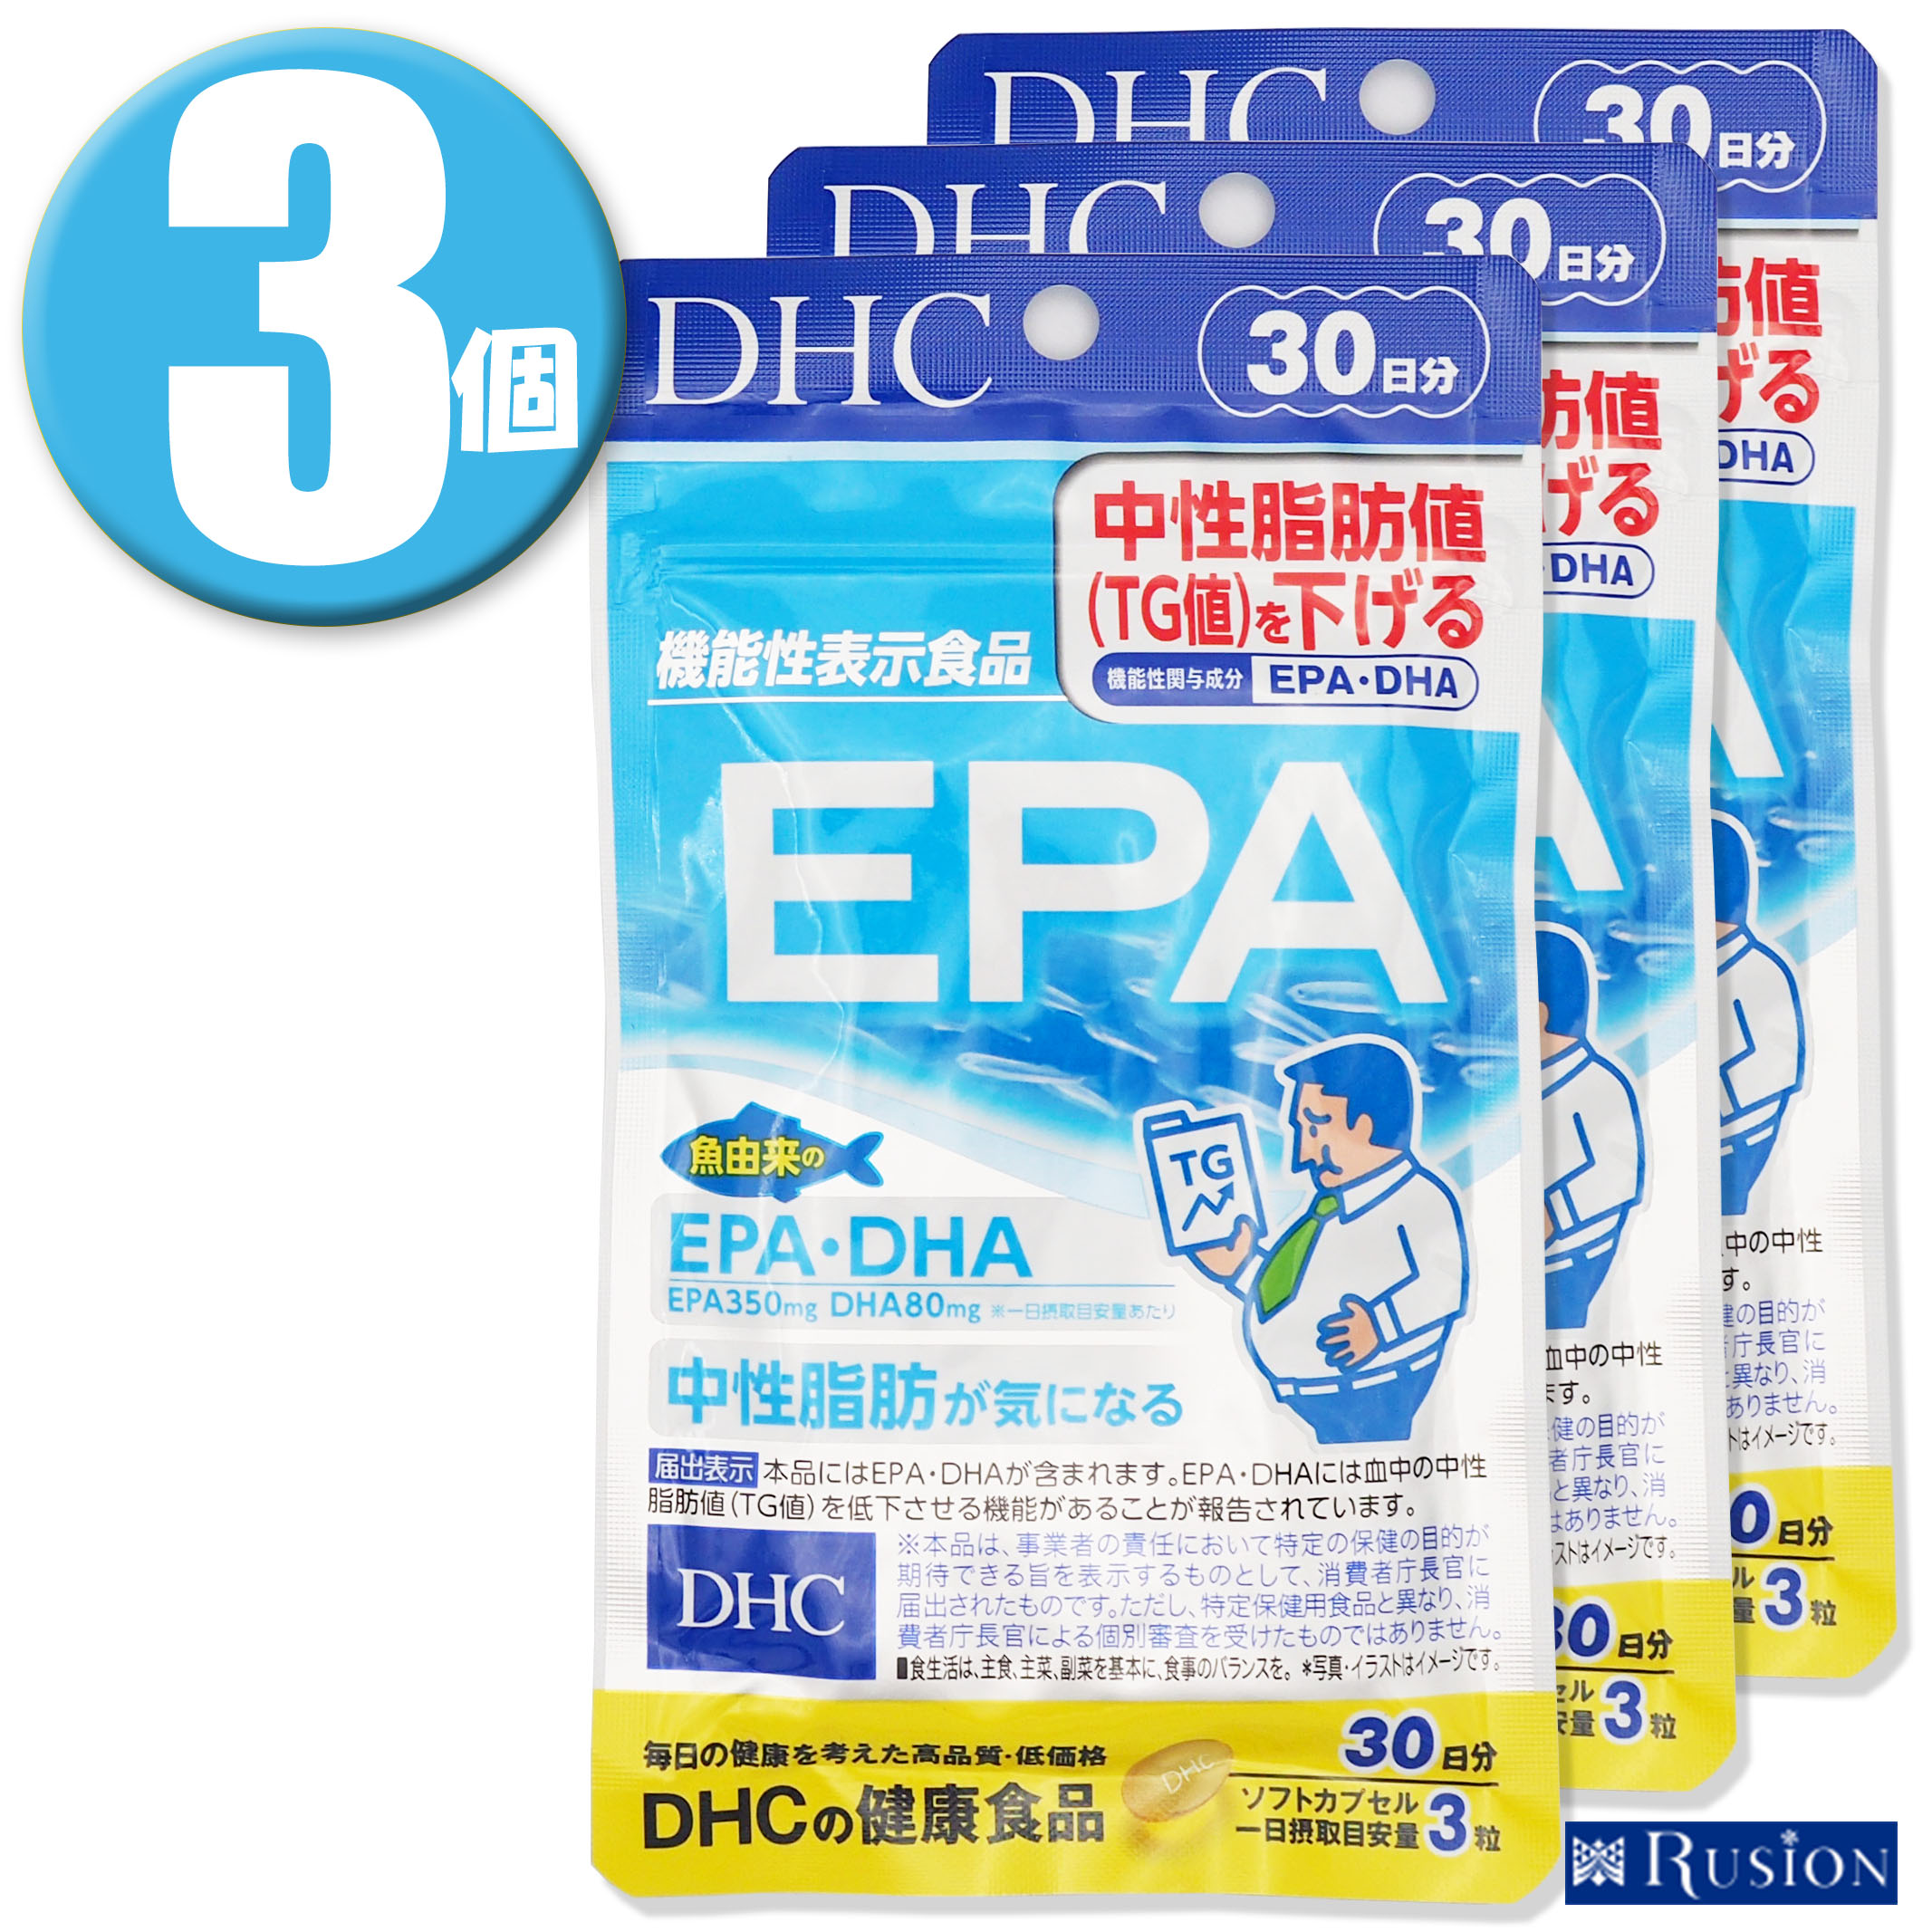 (3)DHC ץ EPA 30ʬ 90γ3 ǽɽ ǥ 򹯿